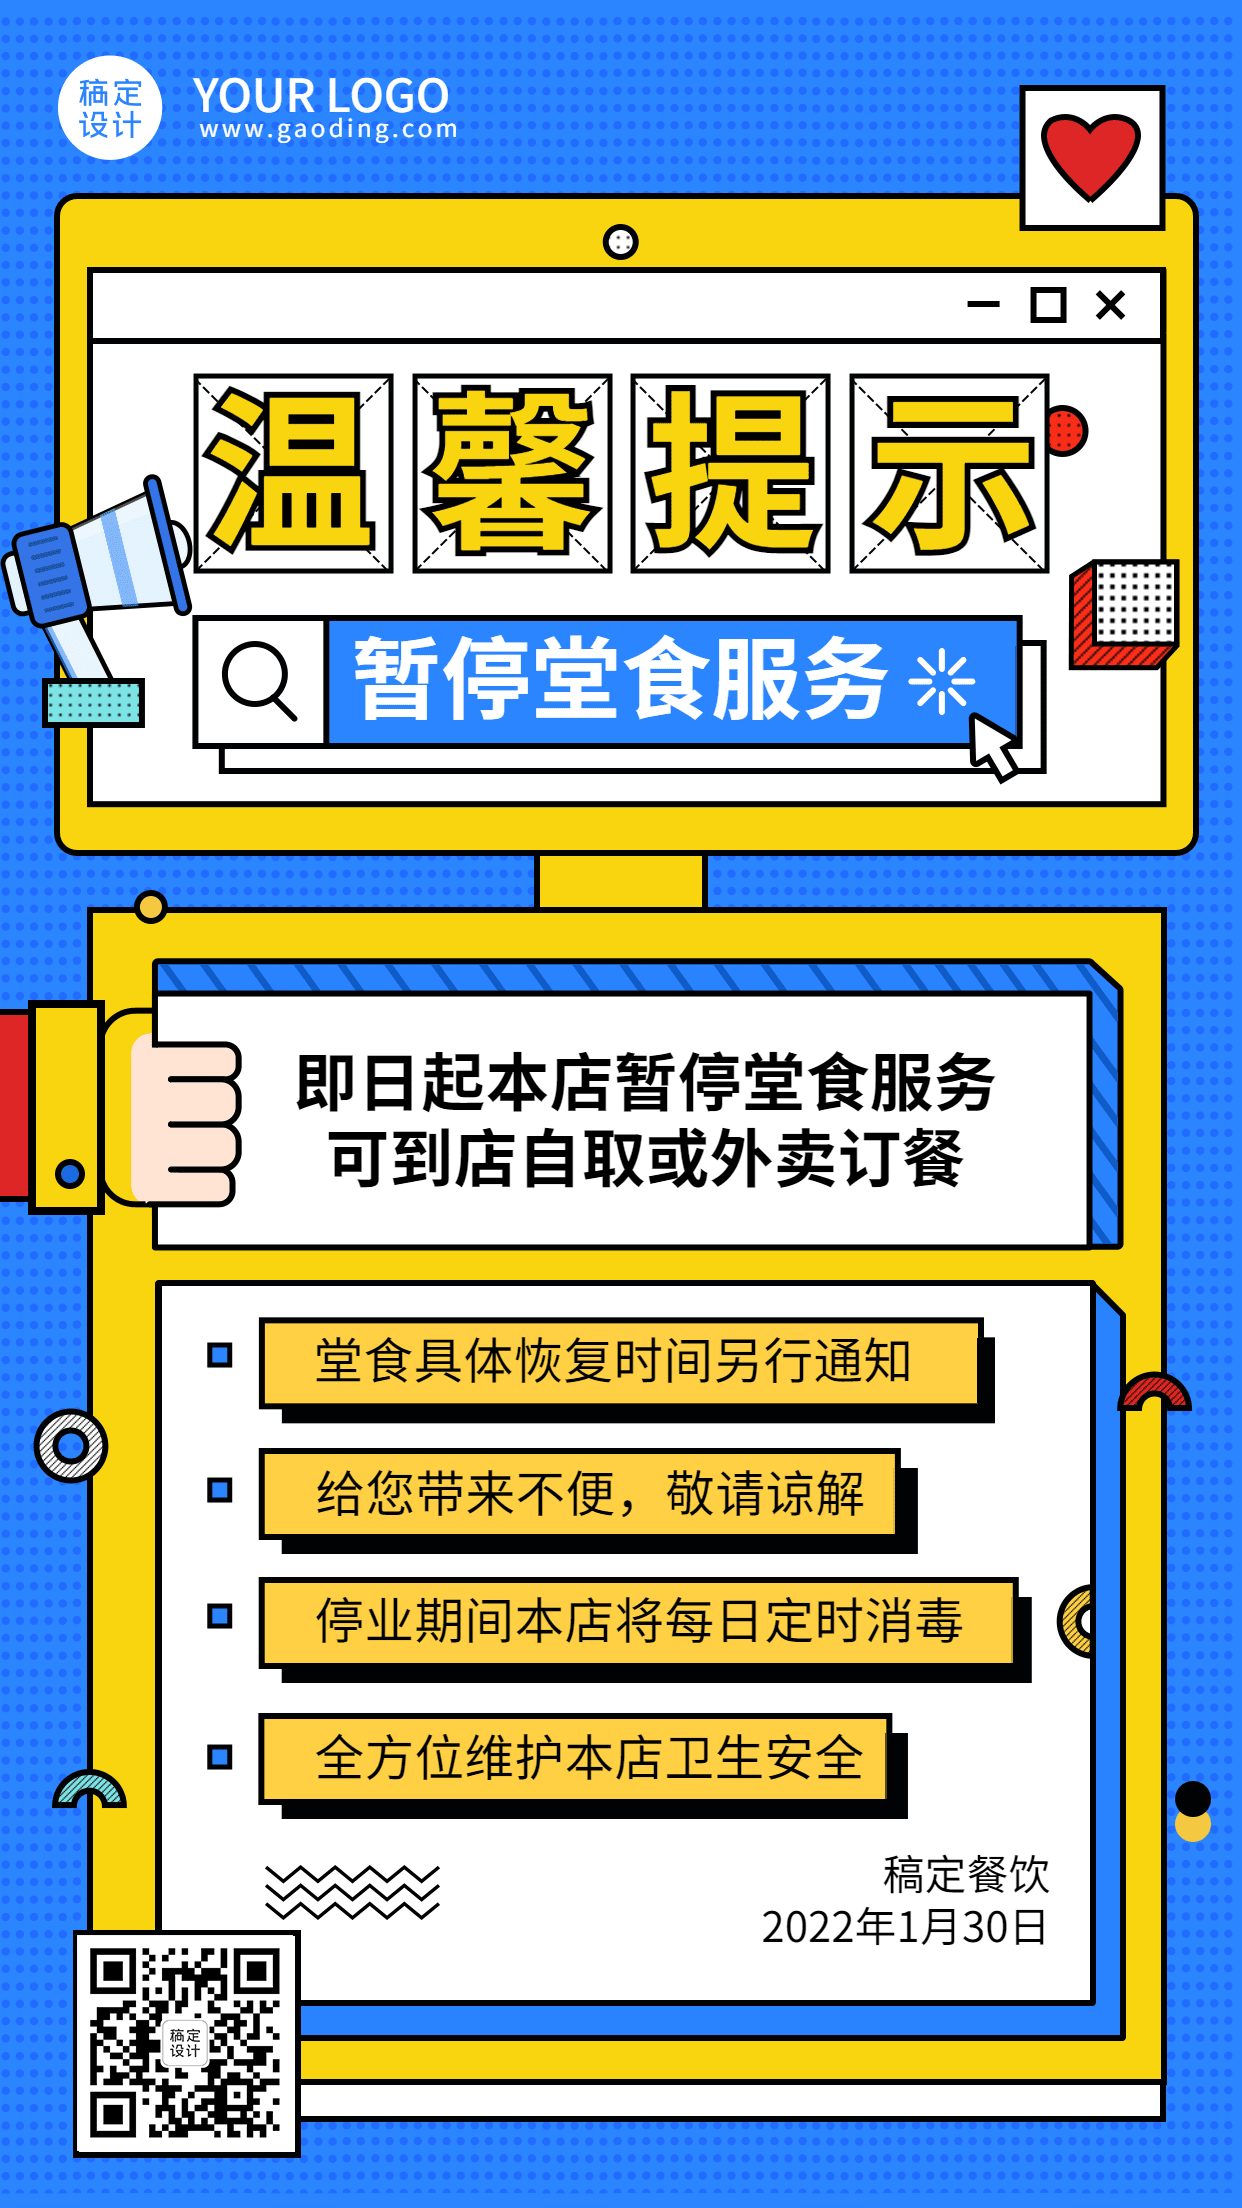 春节暂停堂食通知公告餐饮手机海报